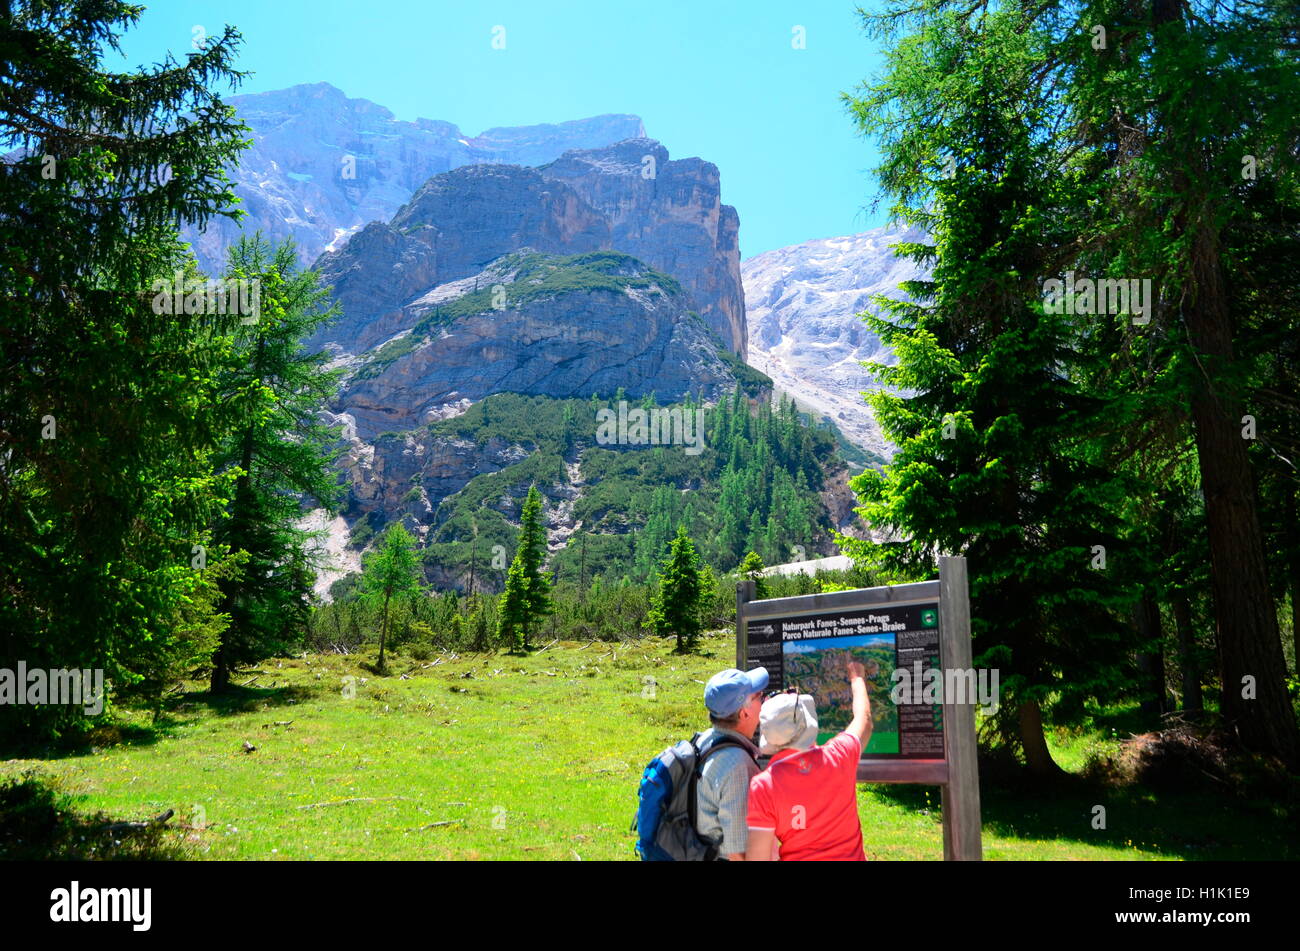 Infotafel, Pragser Wildsee, Naturpark, Fanes-Sennes-Prags, Dolomiten, Pustertal, Suedtirol, Italien Stock Photo